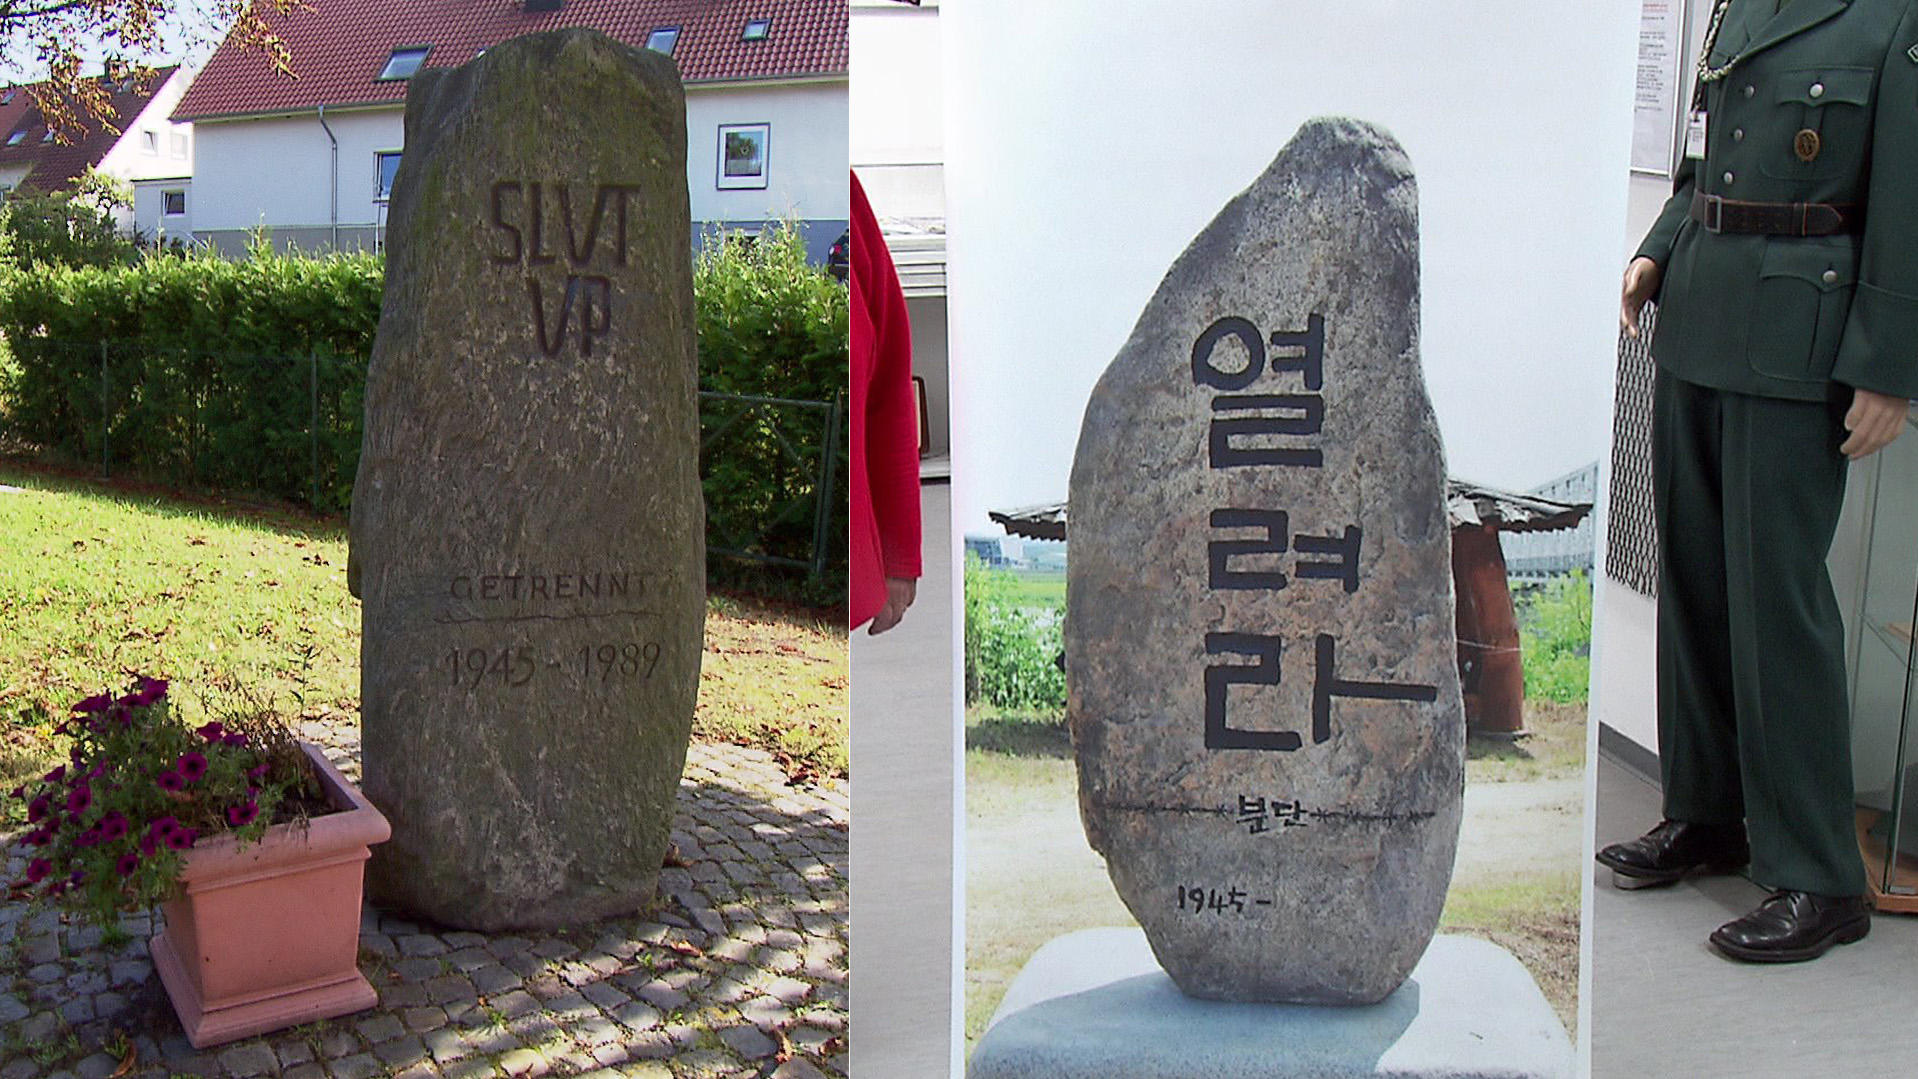 In Südkorea gibt es bereits eine Kopie des Schultuper Gedenksteins. Nur die Jahreszahl der erhofften Wiedervereinigung fehlt noch auf dem koreanischen Exemplar.